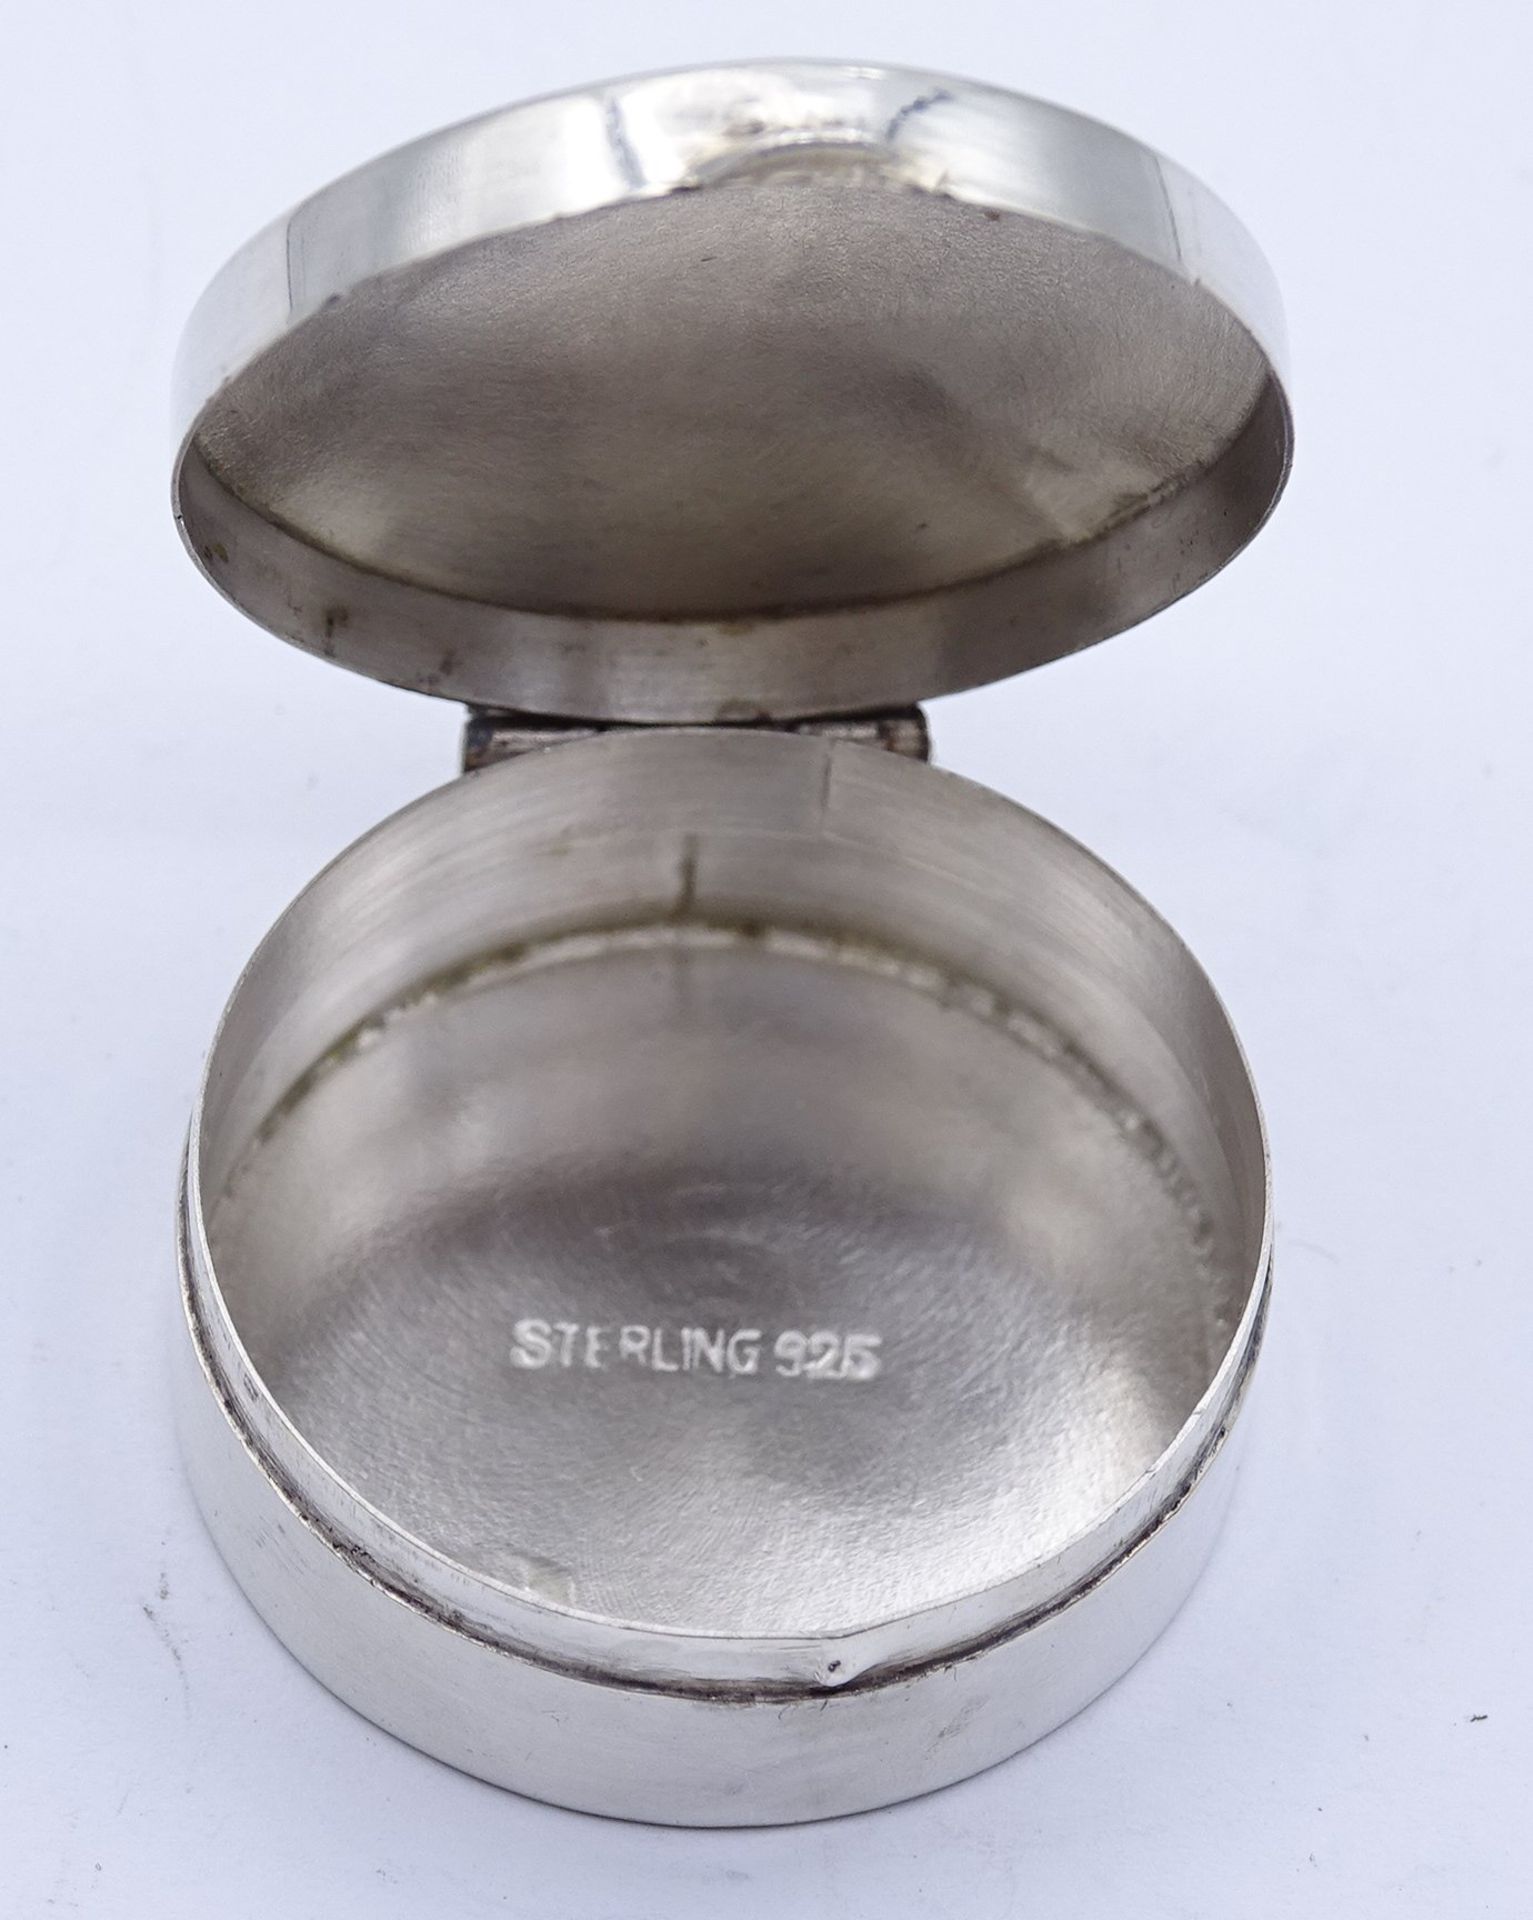 Silberdose, 925/000, mit Initial "E", Ø 3,1 cm, 12 gr., leichte Gebrauchsspuren - Bild 3 aus 4